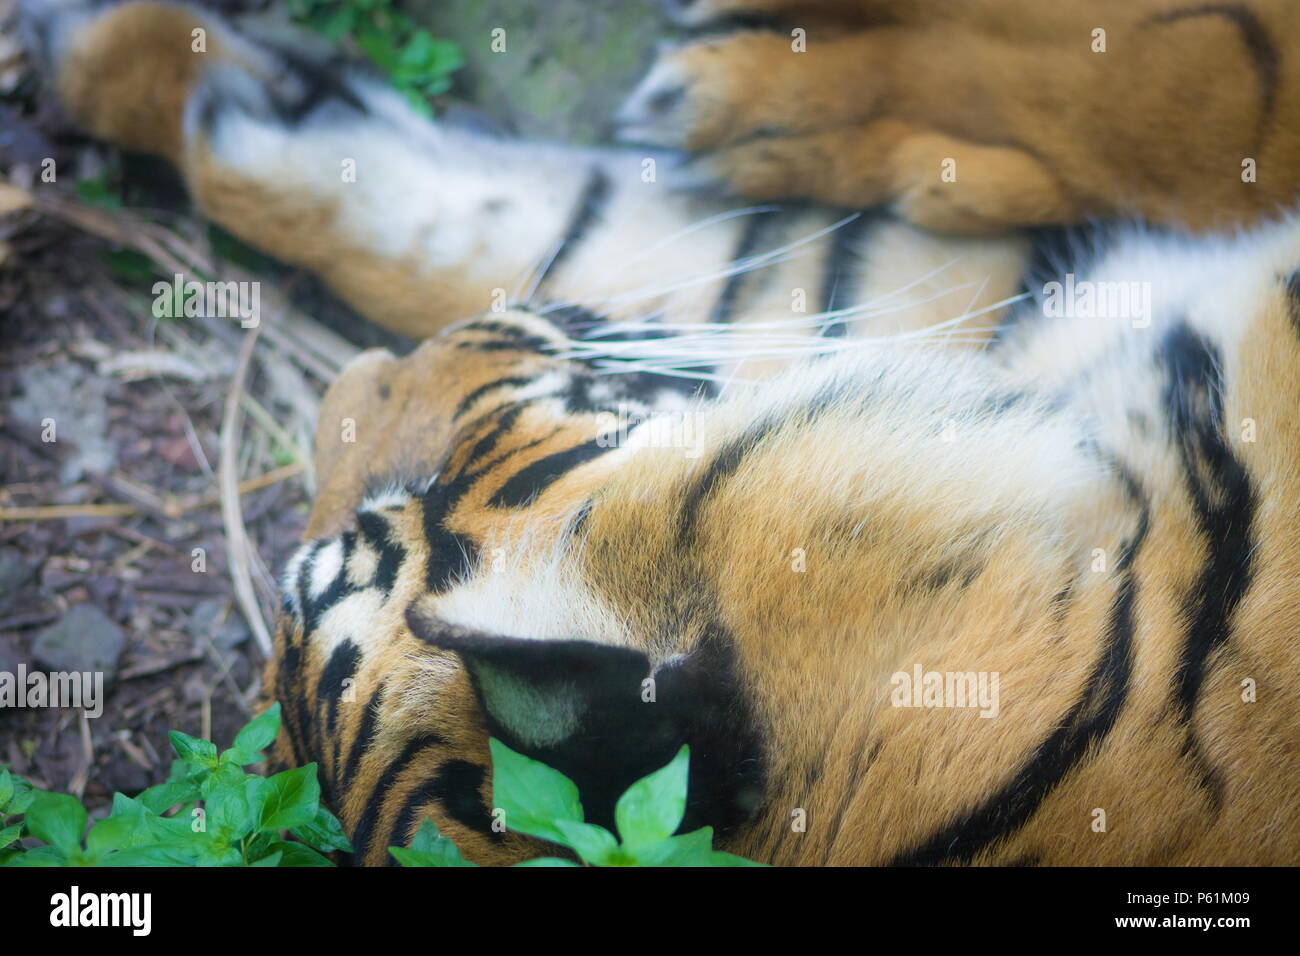 La tigre di Sumatra (Panthera tigris sondaica) è una tigre una popolazione che vive nell'isola indonesiana di Sumatra e è criticamente minacciata di estinzione. Foto Stock